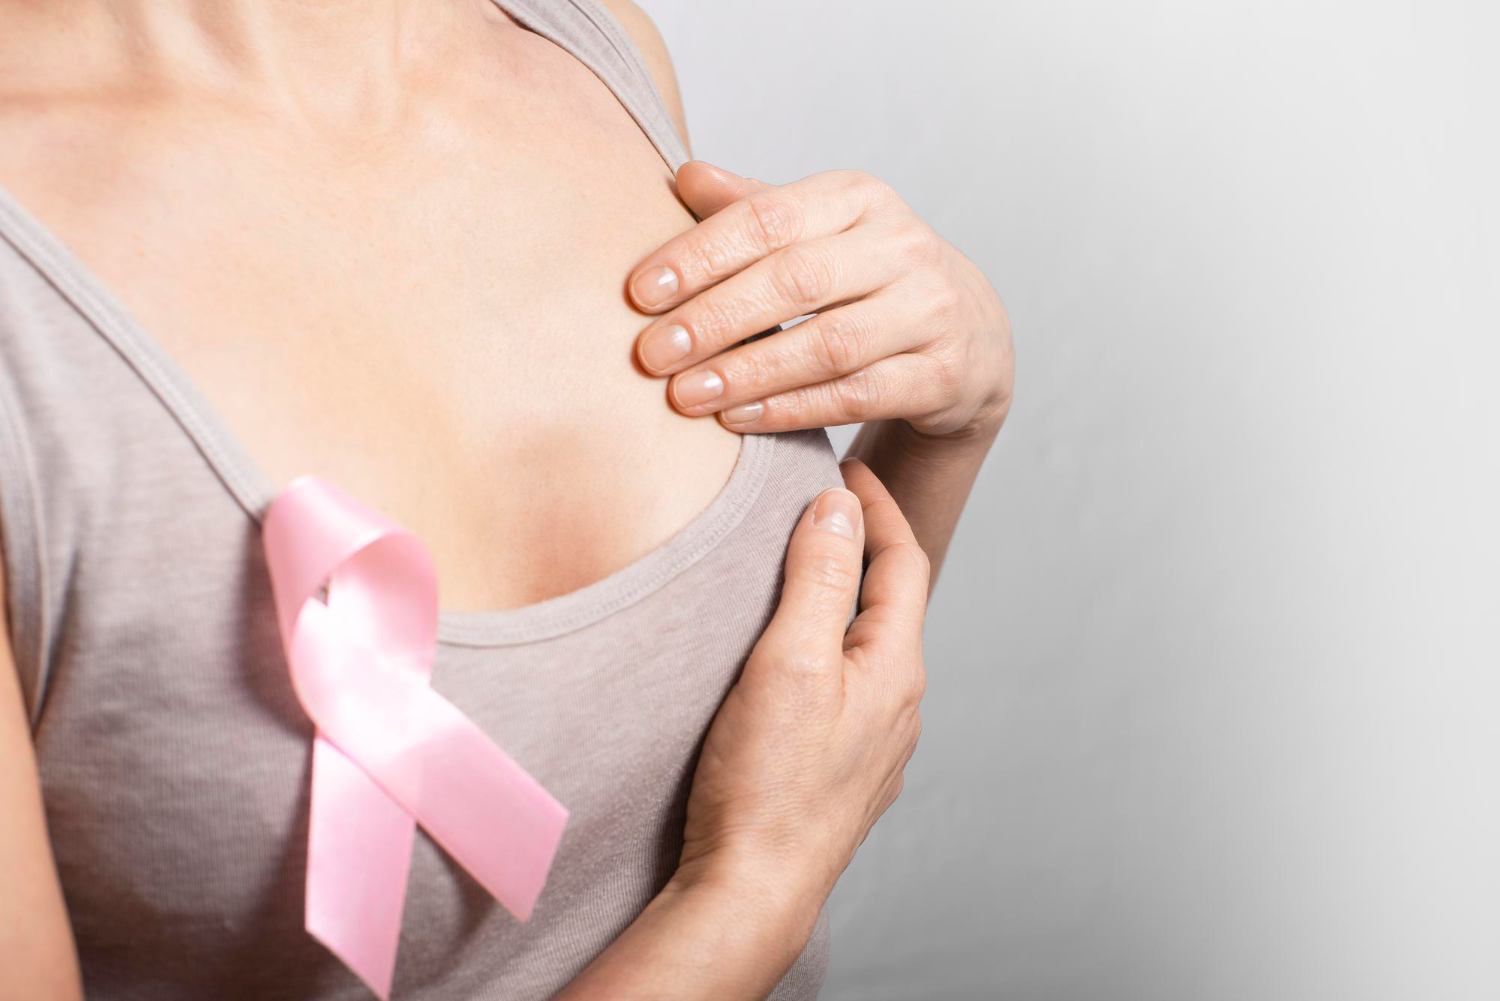 Megelőzés és korai diagnosztizálás - Vegye fel a harcot a mellrákkal!